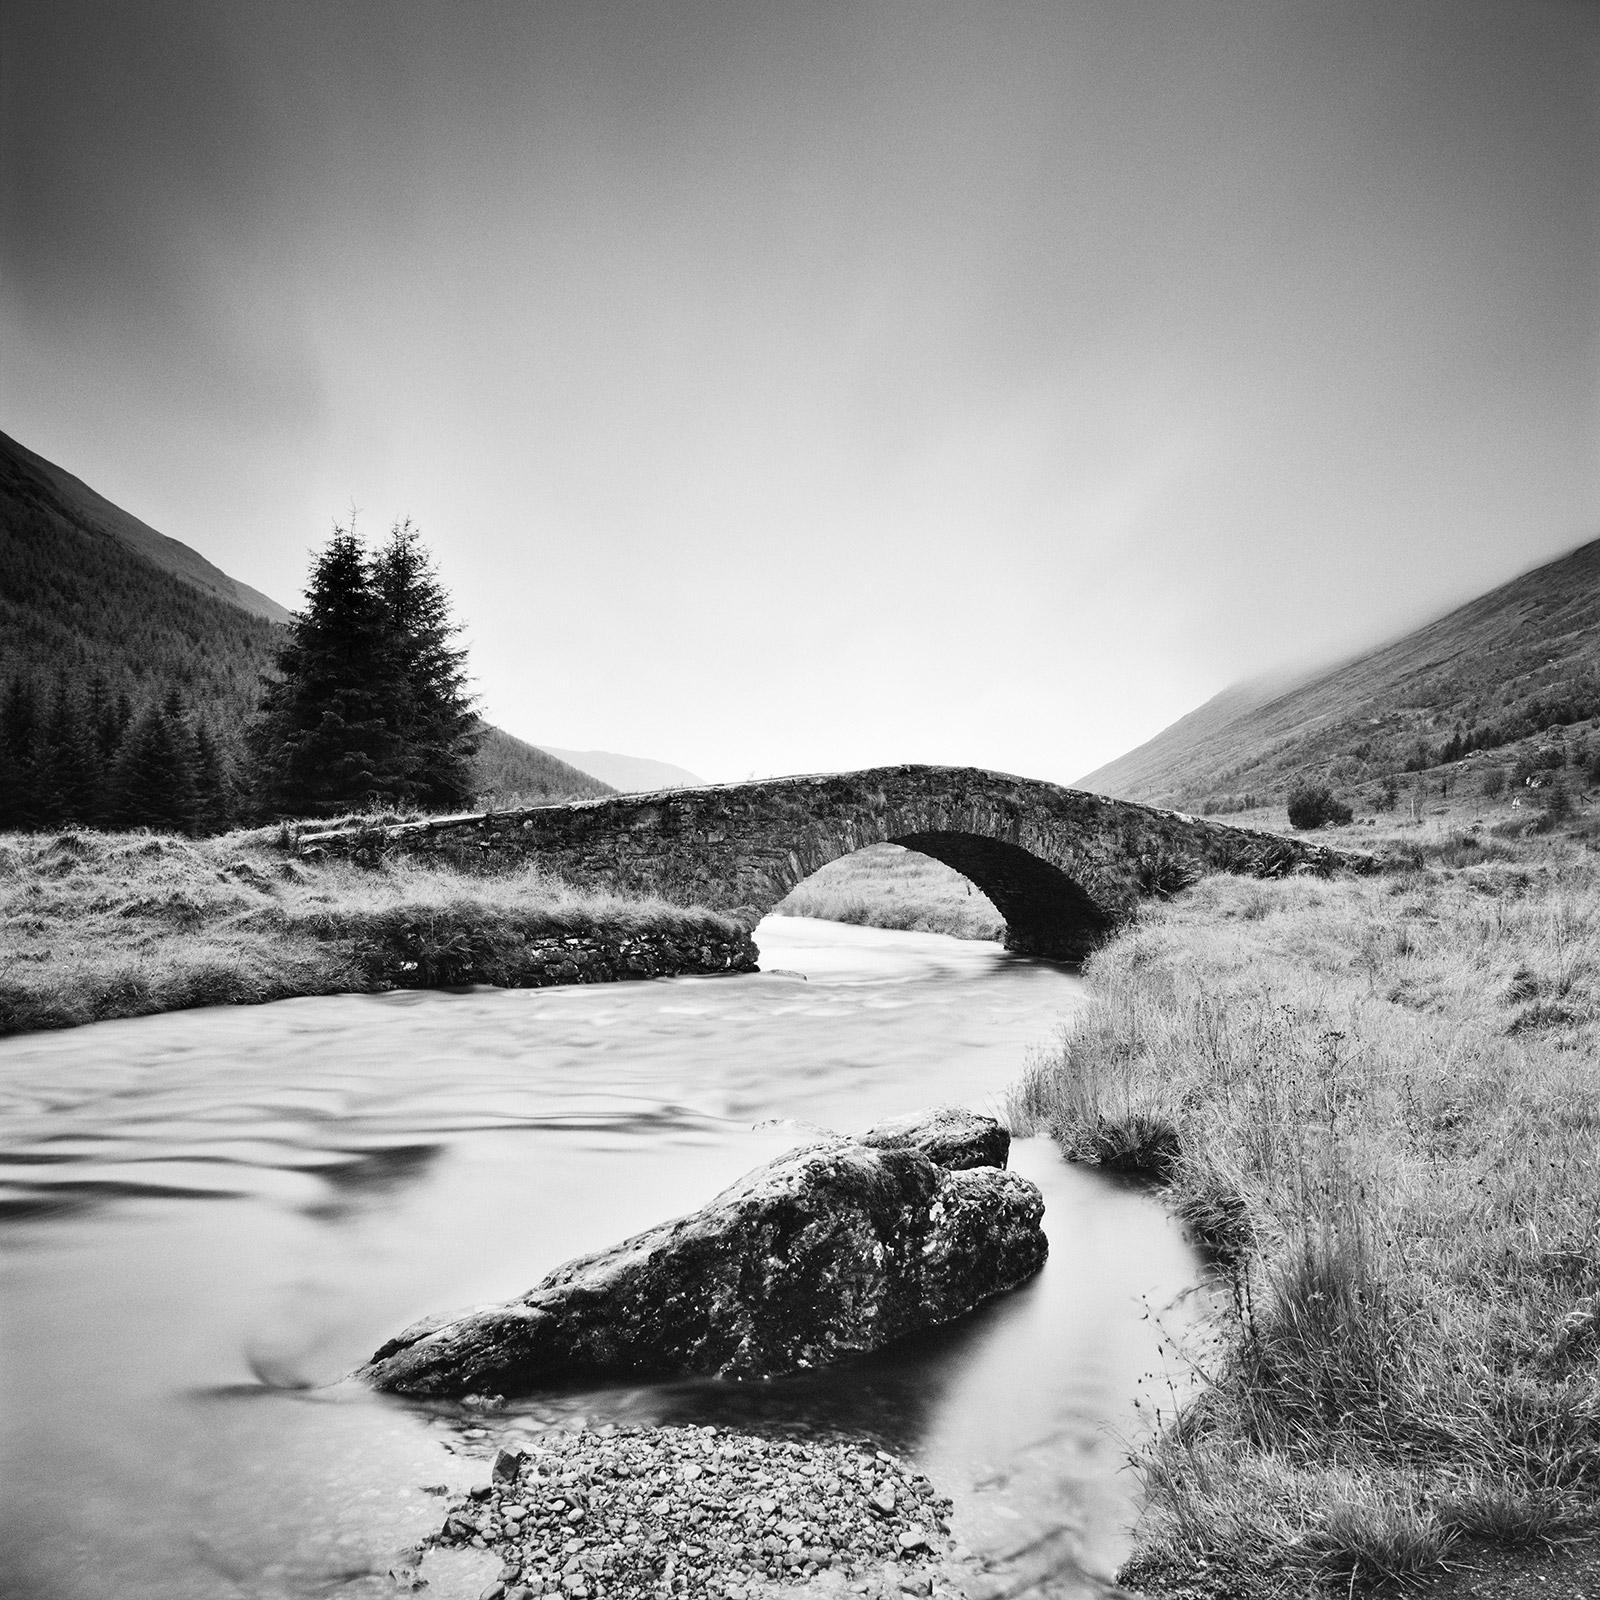 Gerald Berghammer Landscape Photograph – Stone Bridge, Highlands, Schottland, Schwarz-Weiß-Landschaftsfotografie